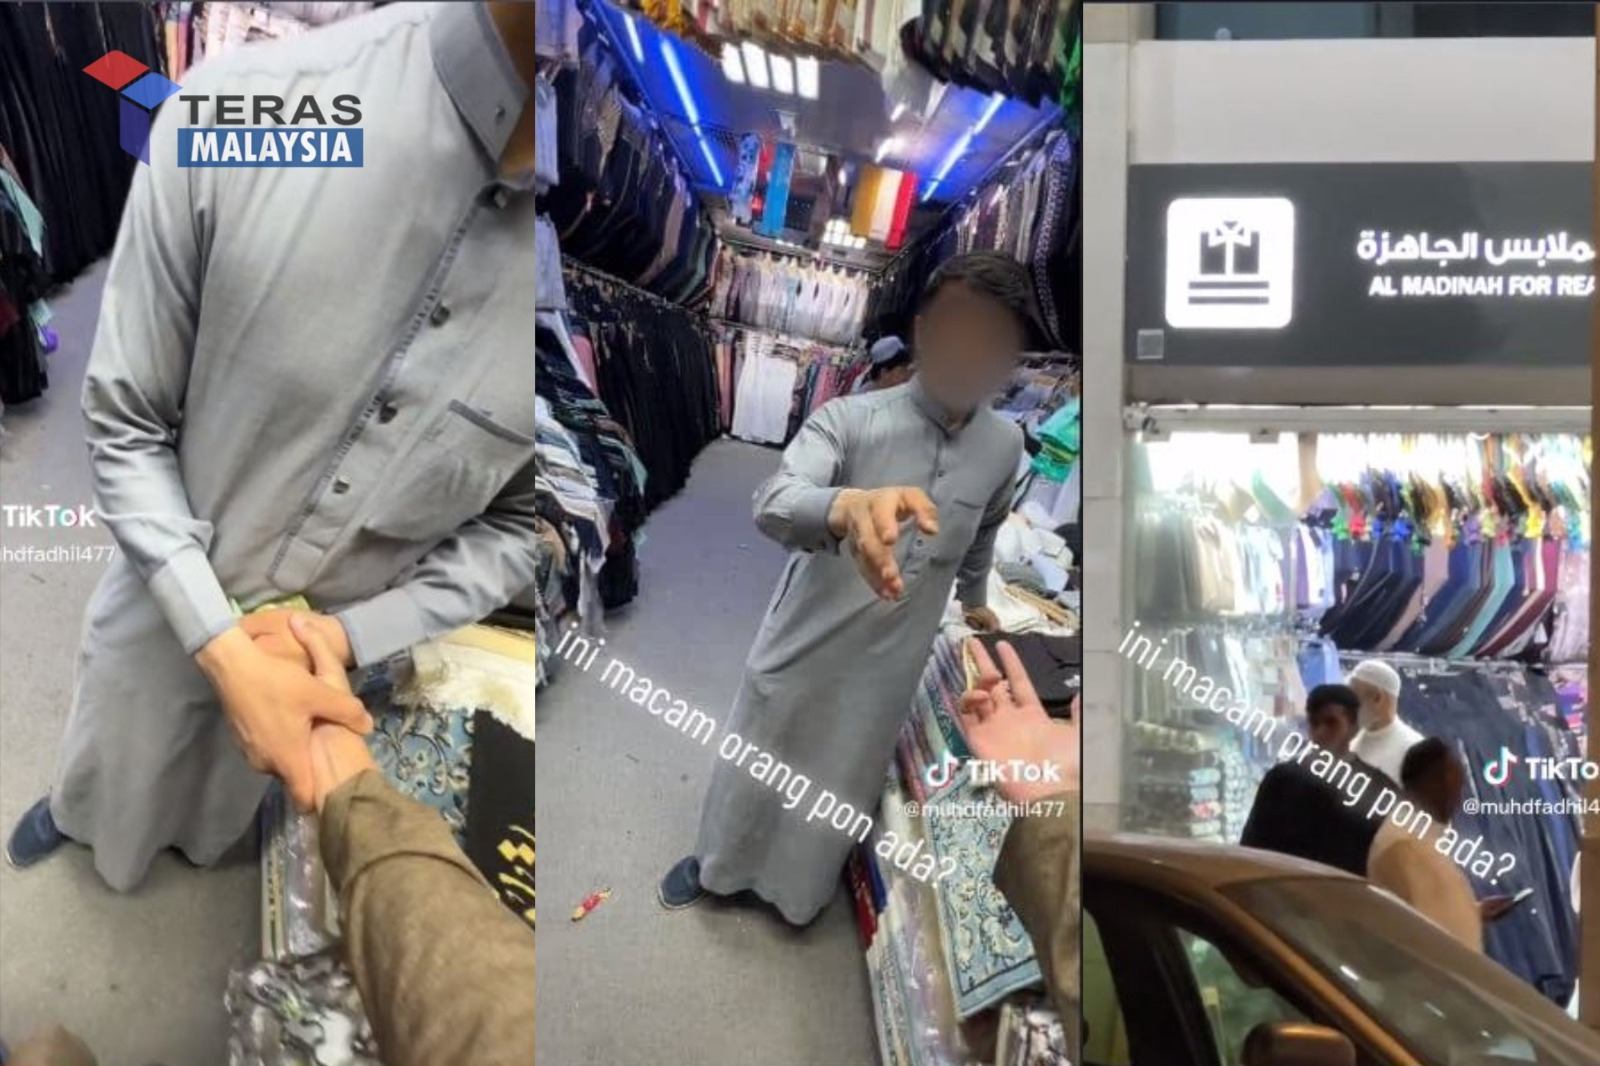 Lelaki terkejut penjual tarik tangan dan rampas duit paksa beli barang masa cuci mata di Madinah